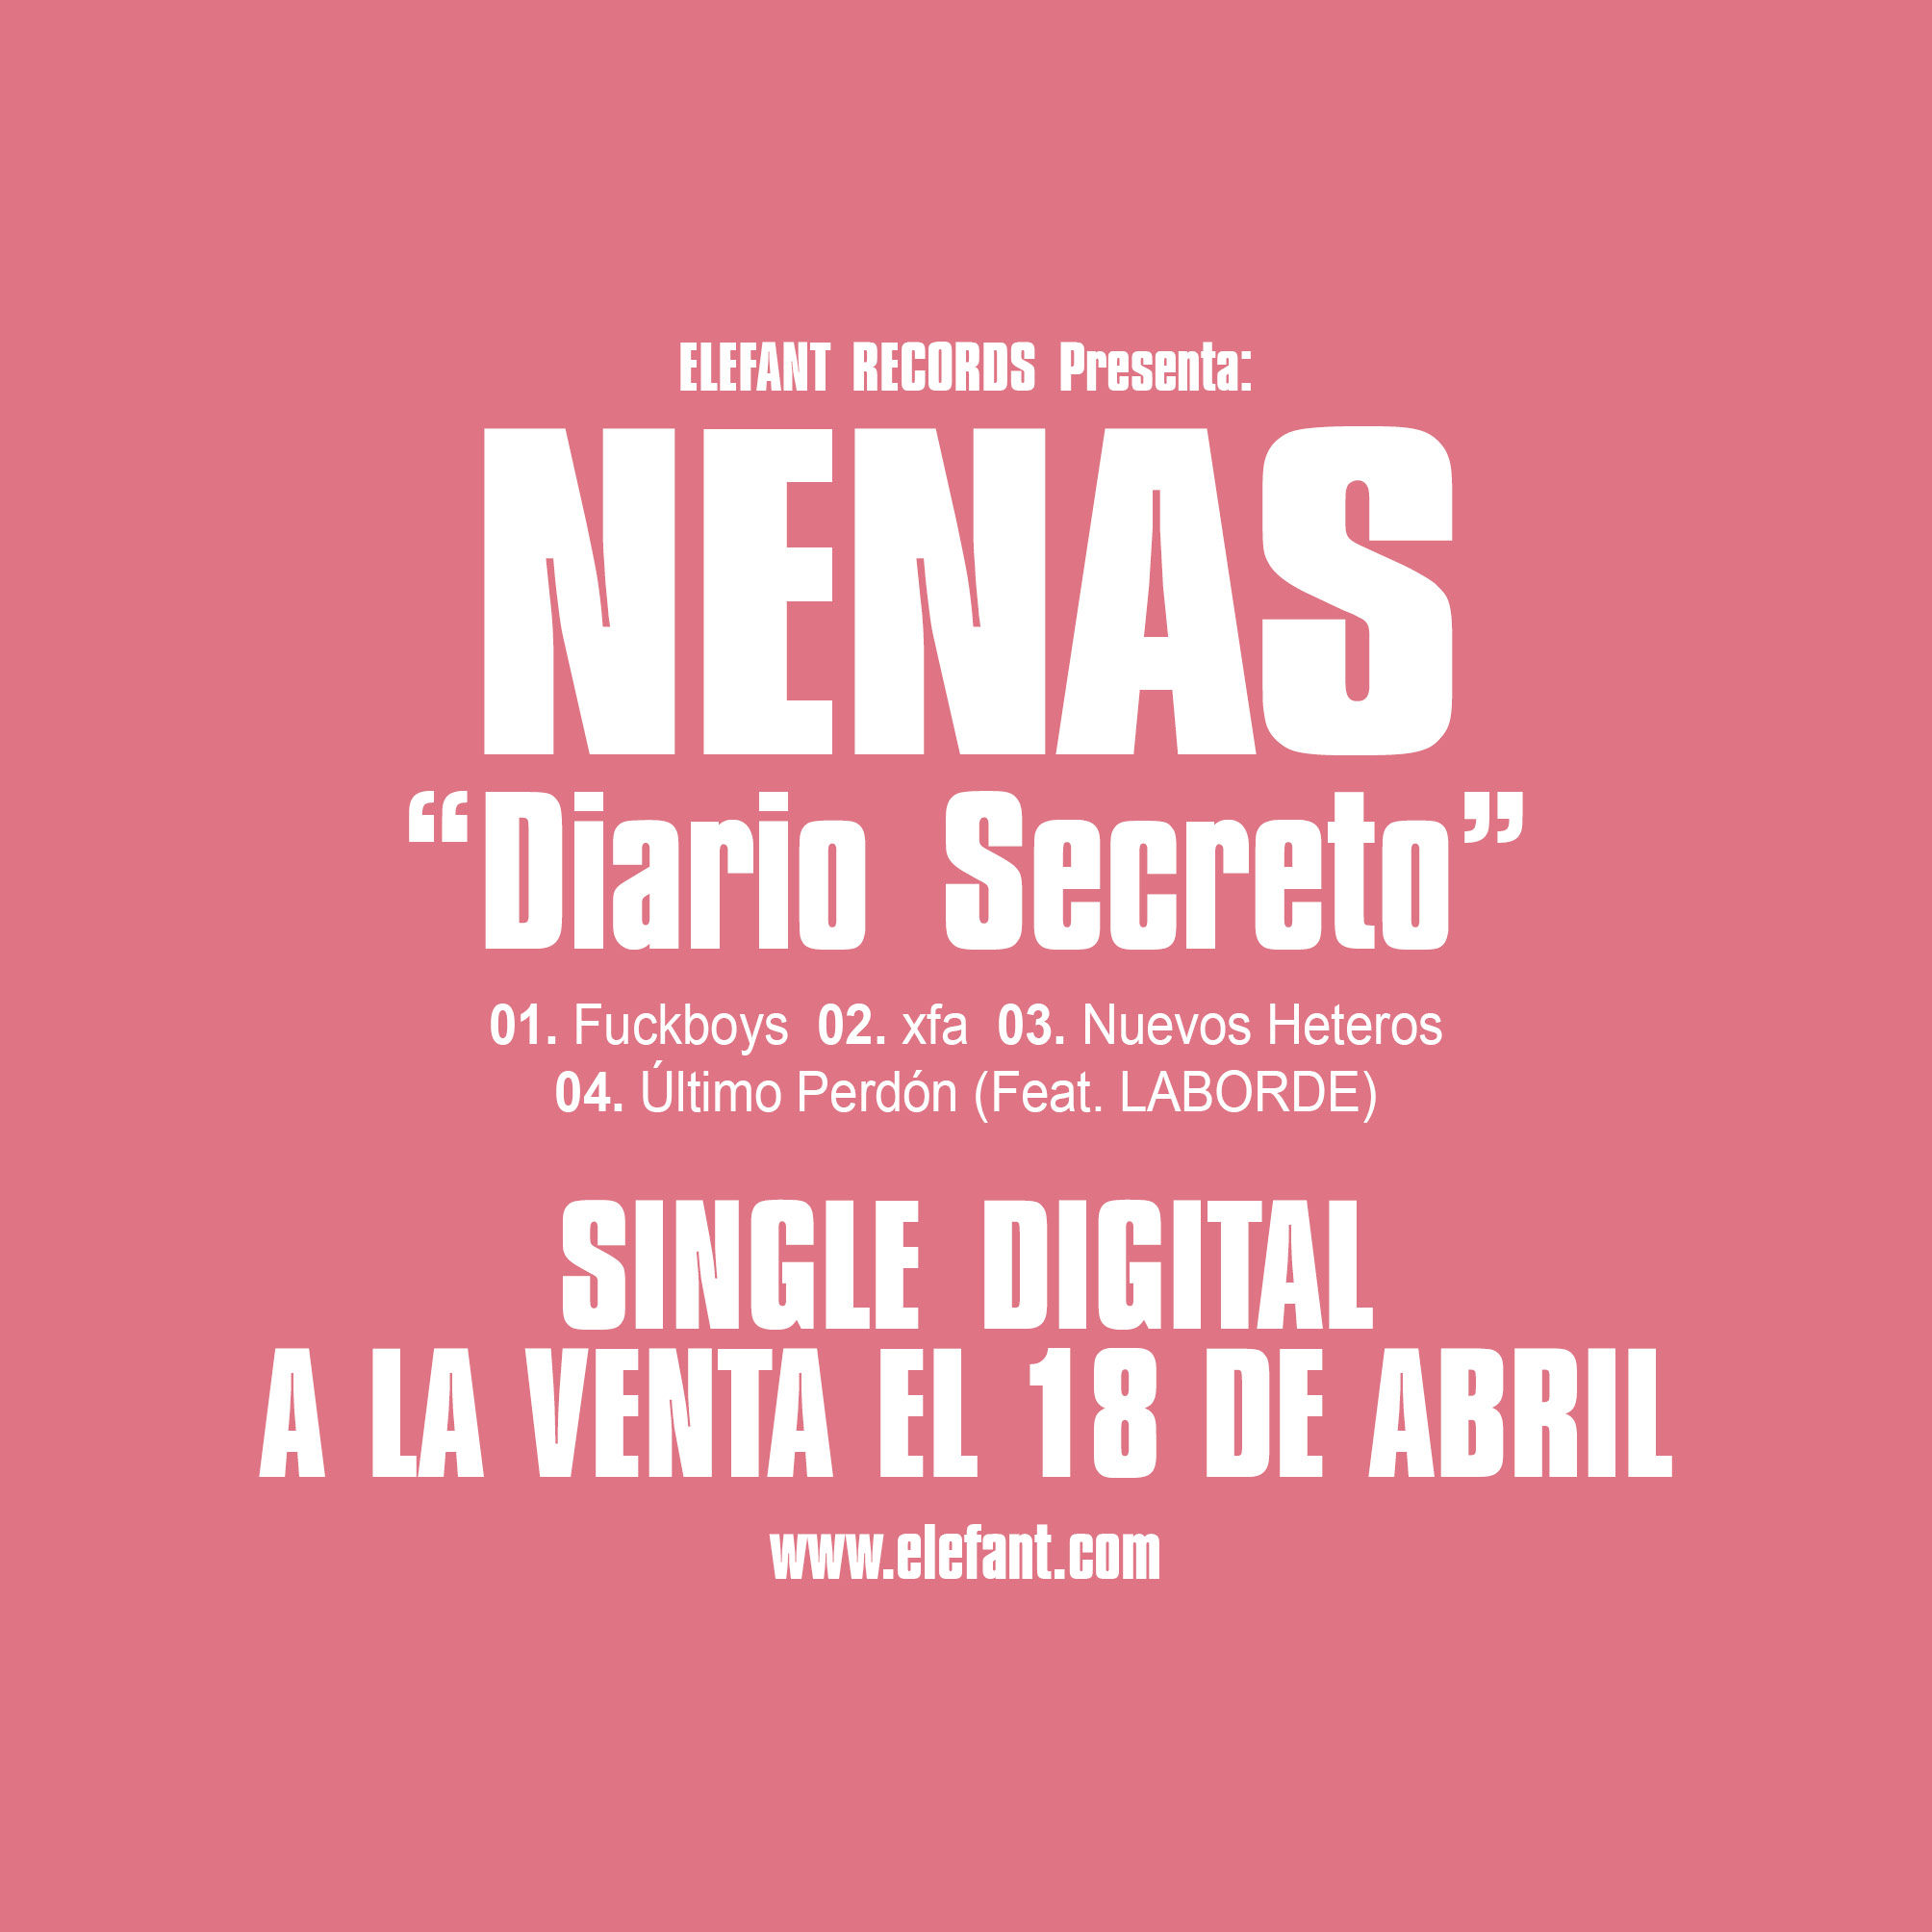 NENAS "Diario Secreto" Single EP